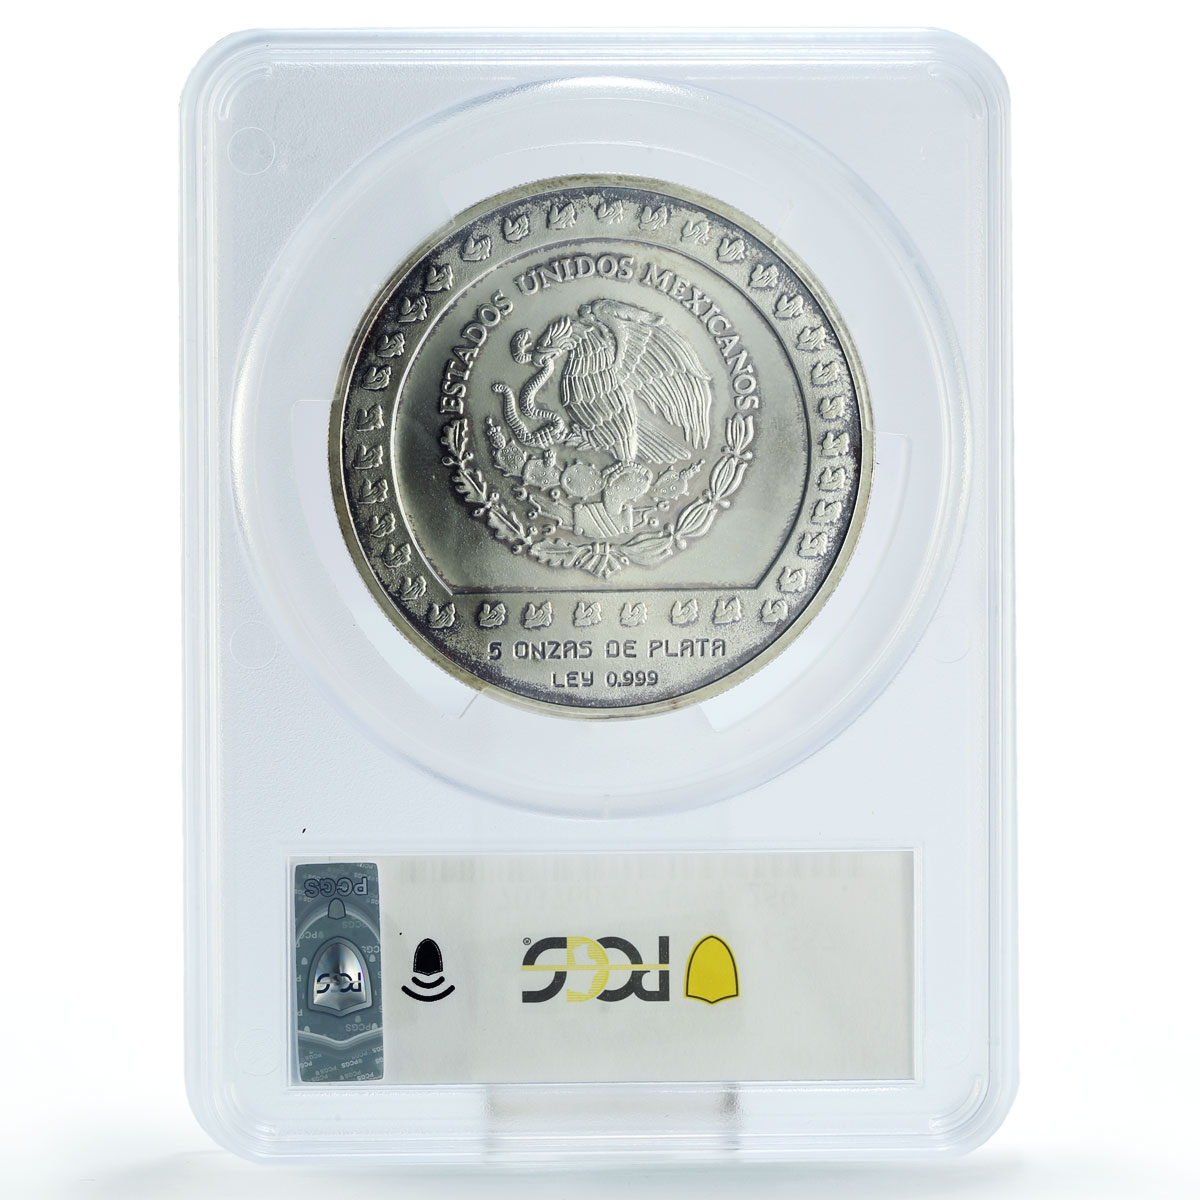 Mexico 10000 pesos Precolombina Piedra de Tizoc MS67 PCGS 5 oz silver coin 1992